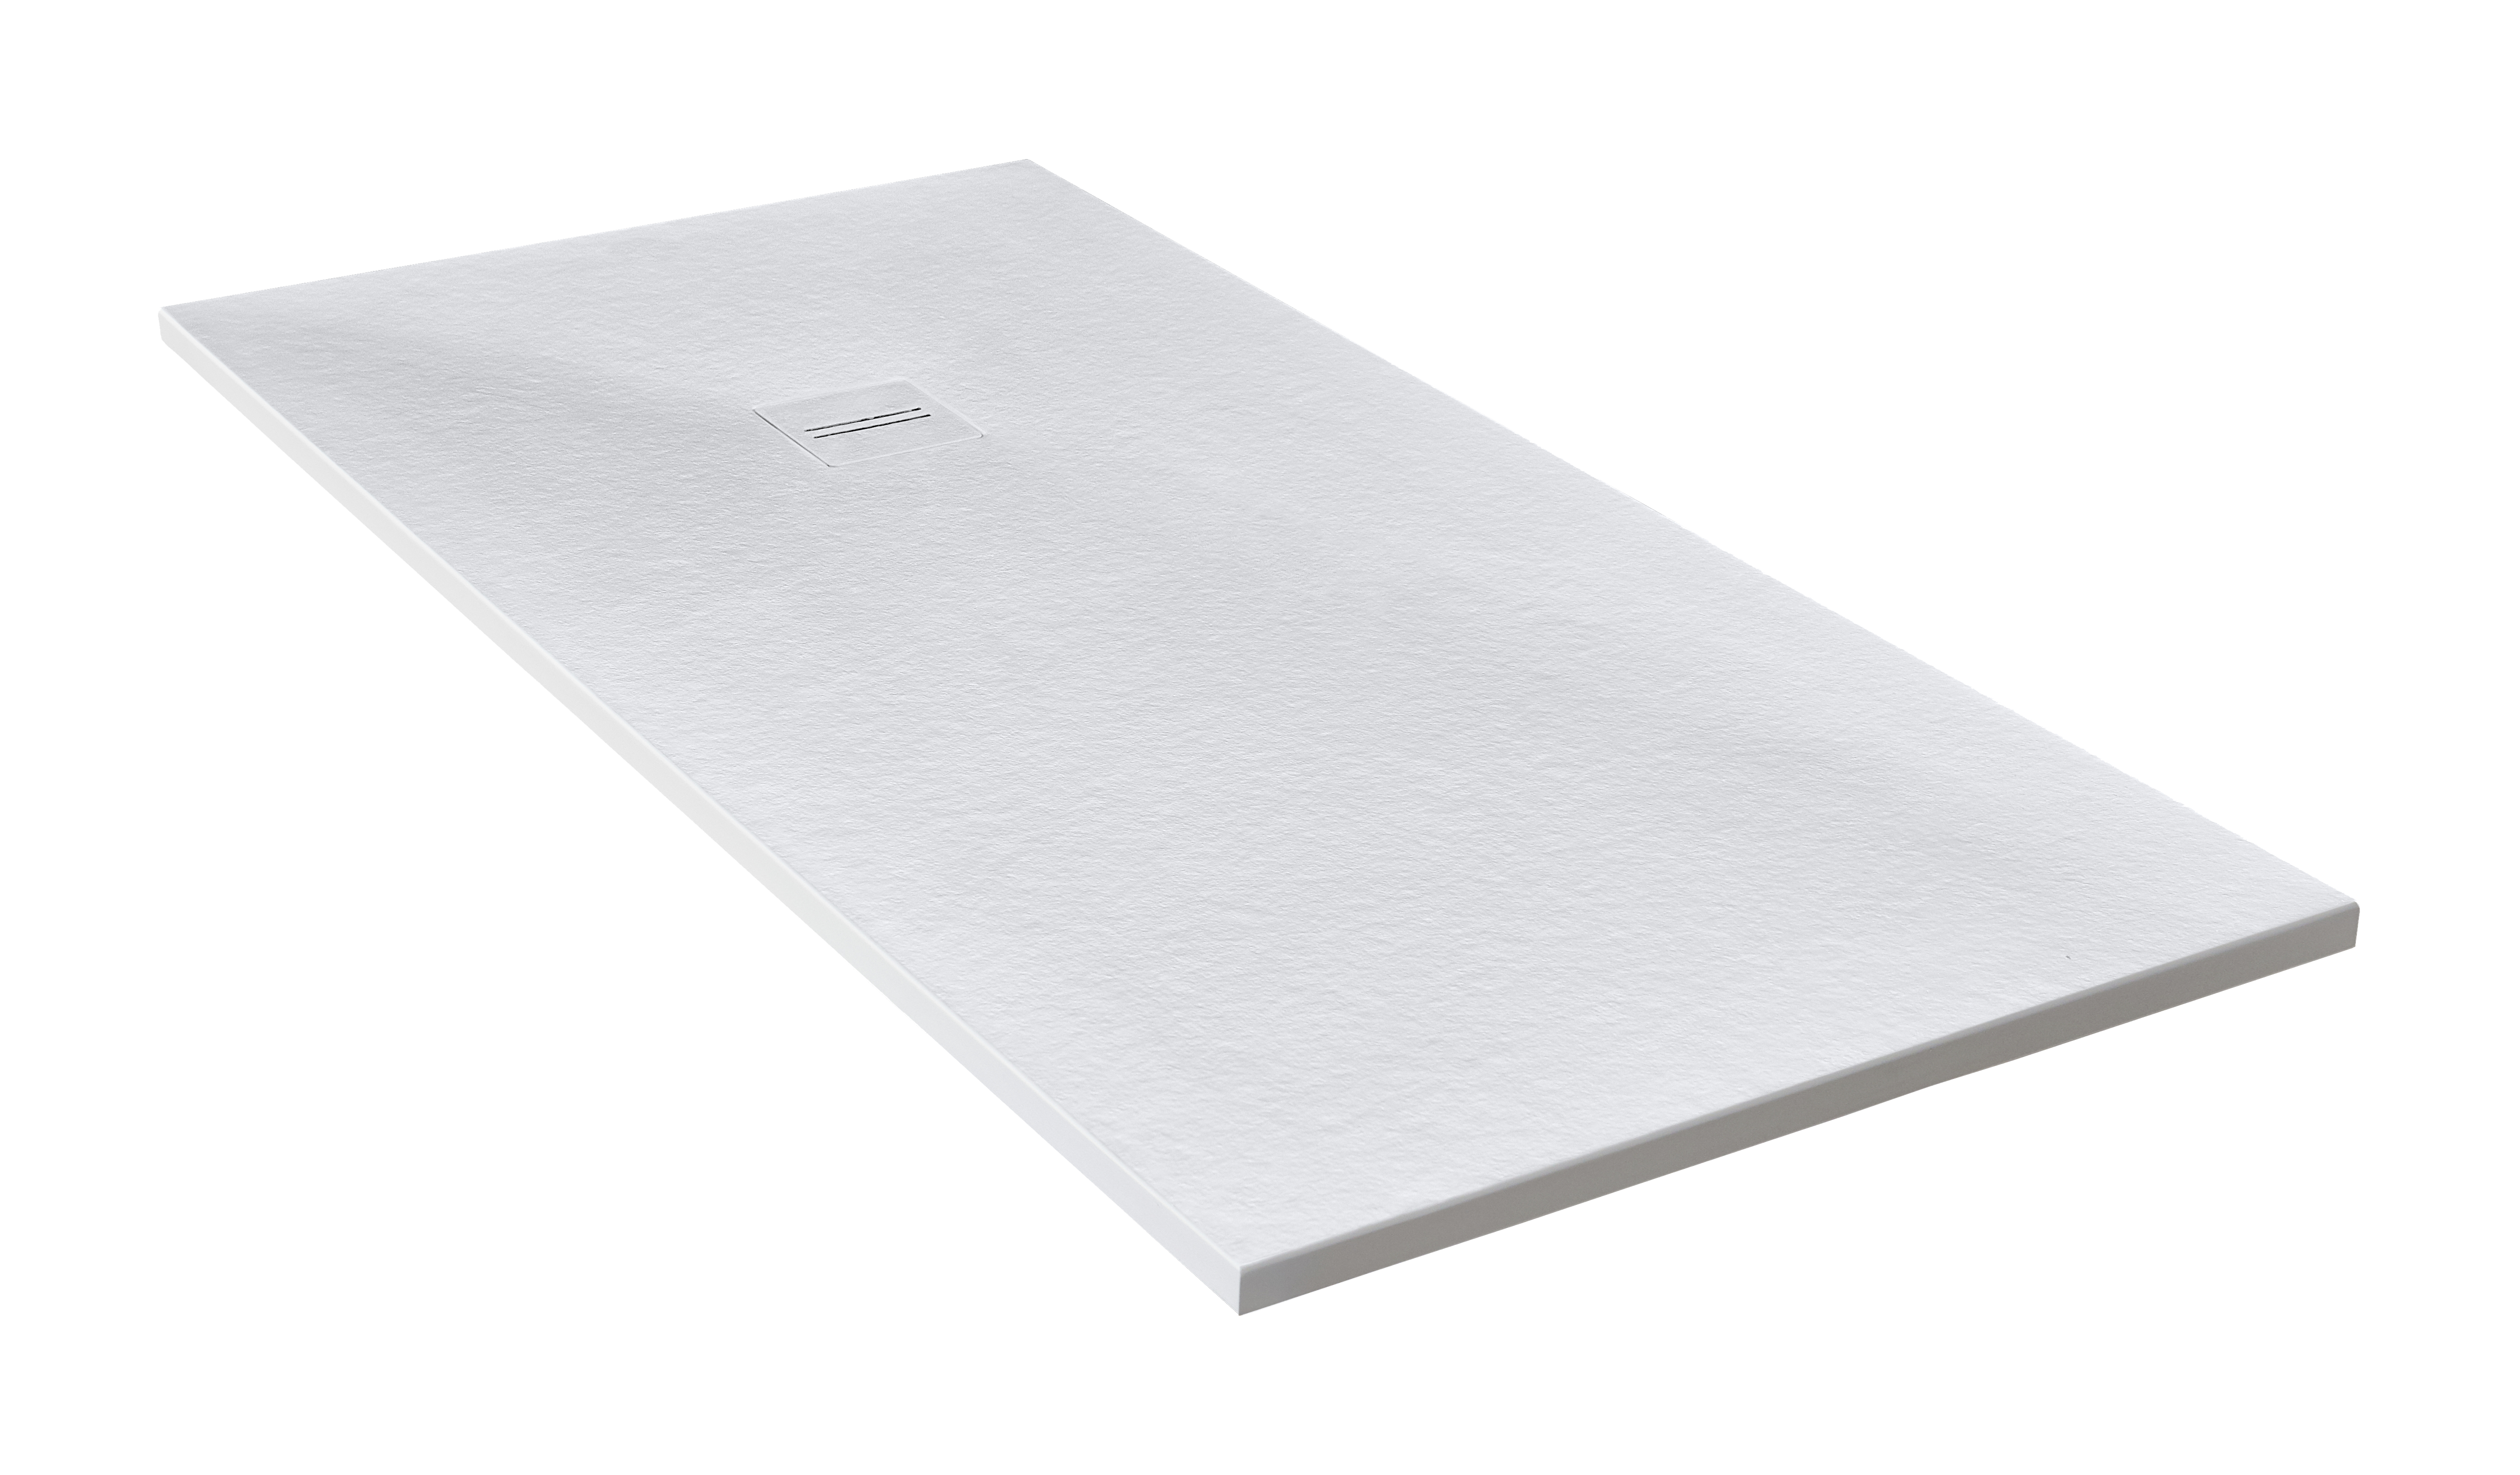 Plato de ducha cosmos 160x100 cm blanco